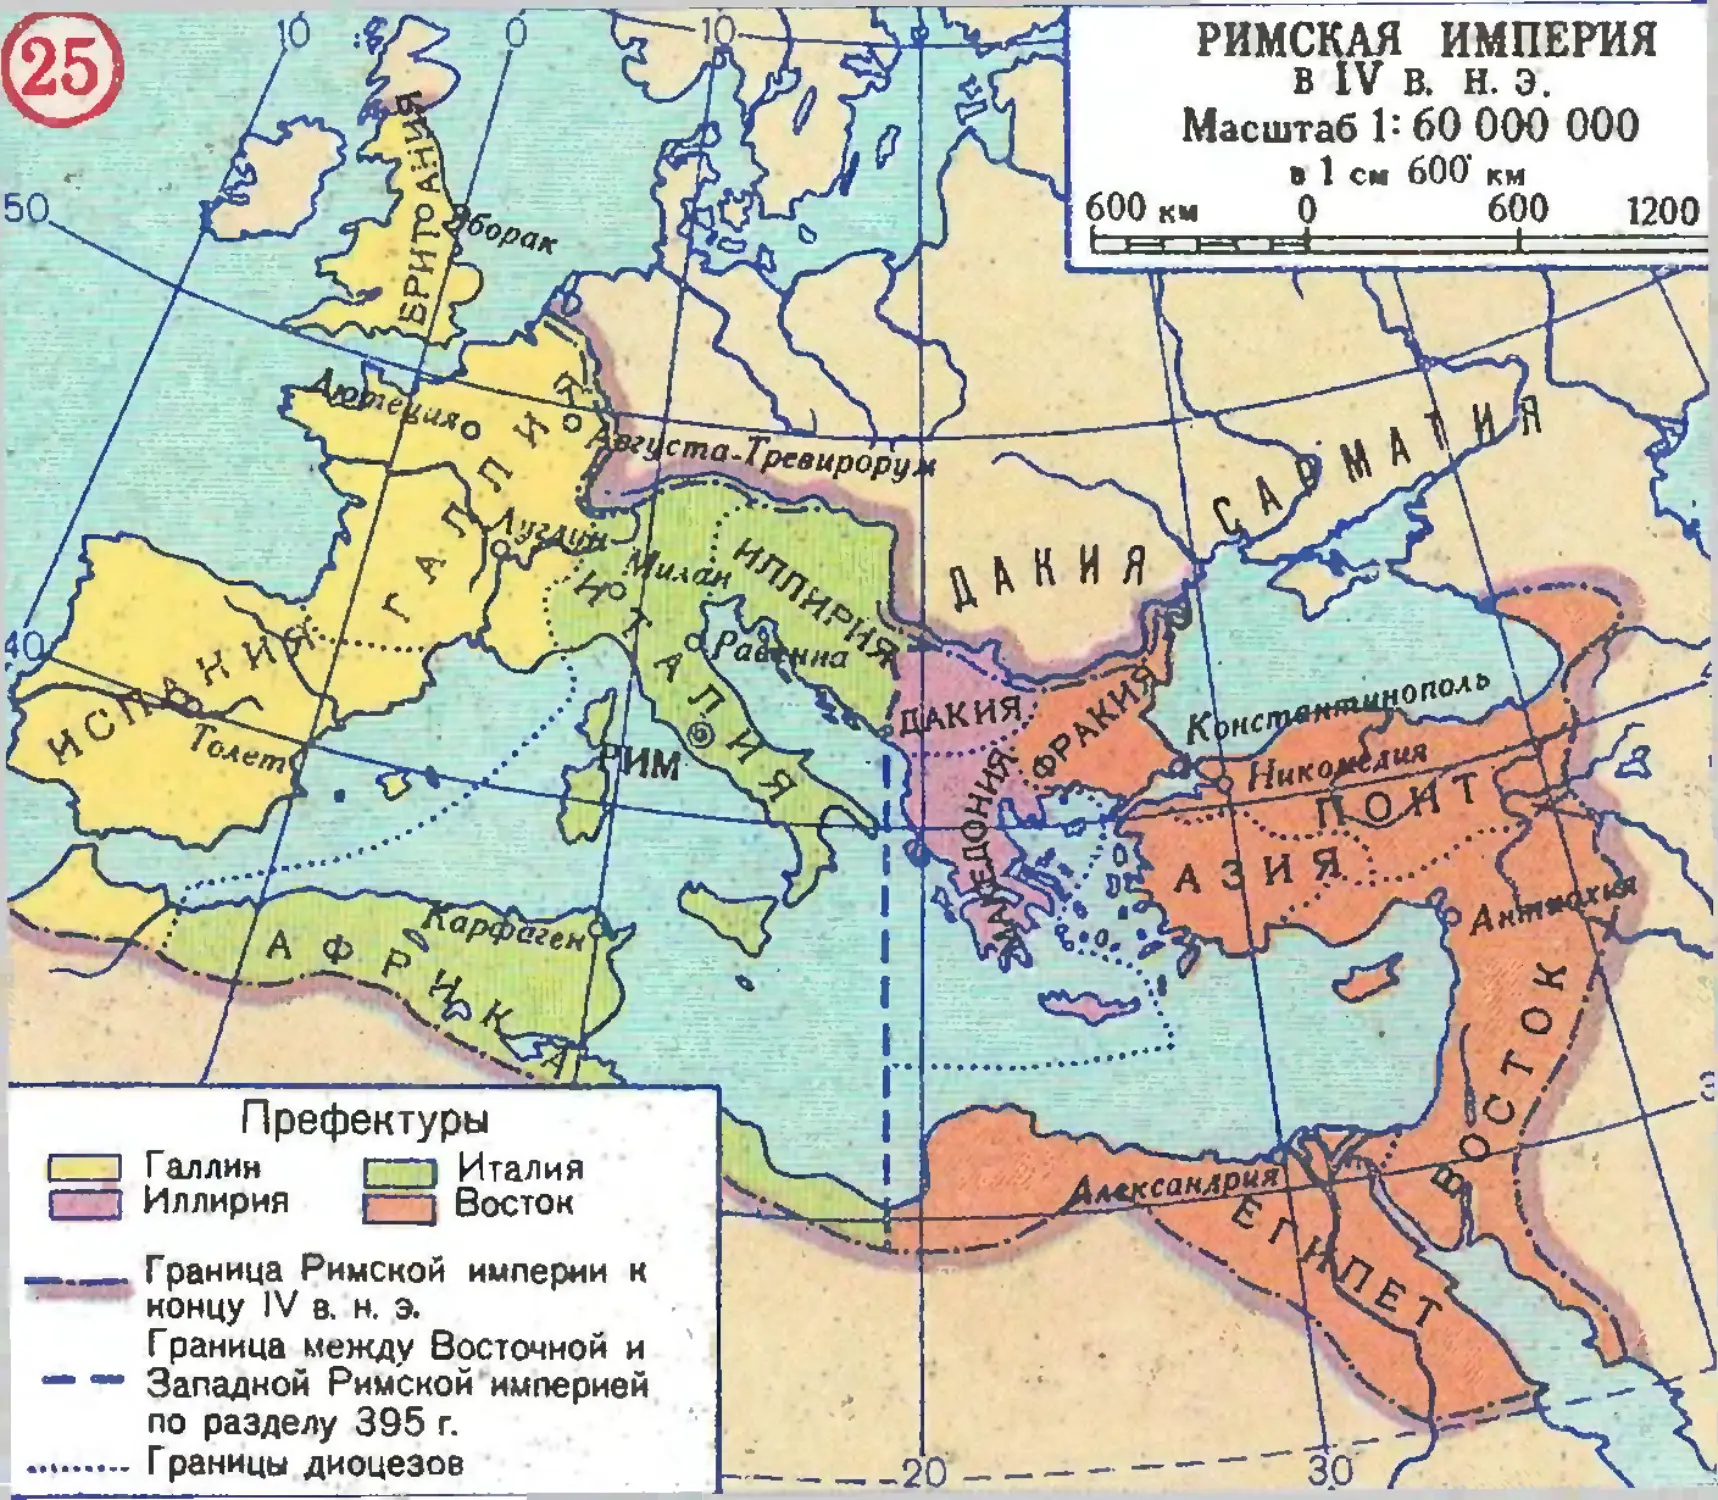 Рим 4 век до н э. Карта римской империи 4 век нашей эры. Границы римской империи в 4 веке. Римская Империя в 4 веке нашей эры карта. Римская Империя 4 века карта.